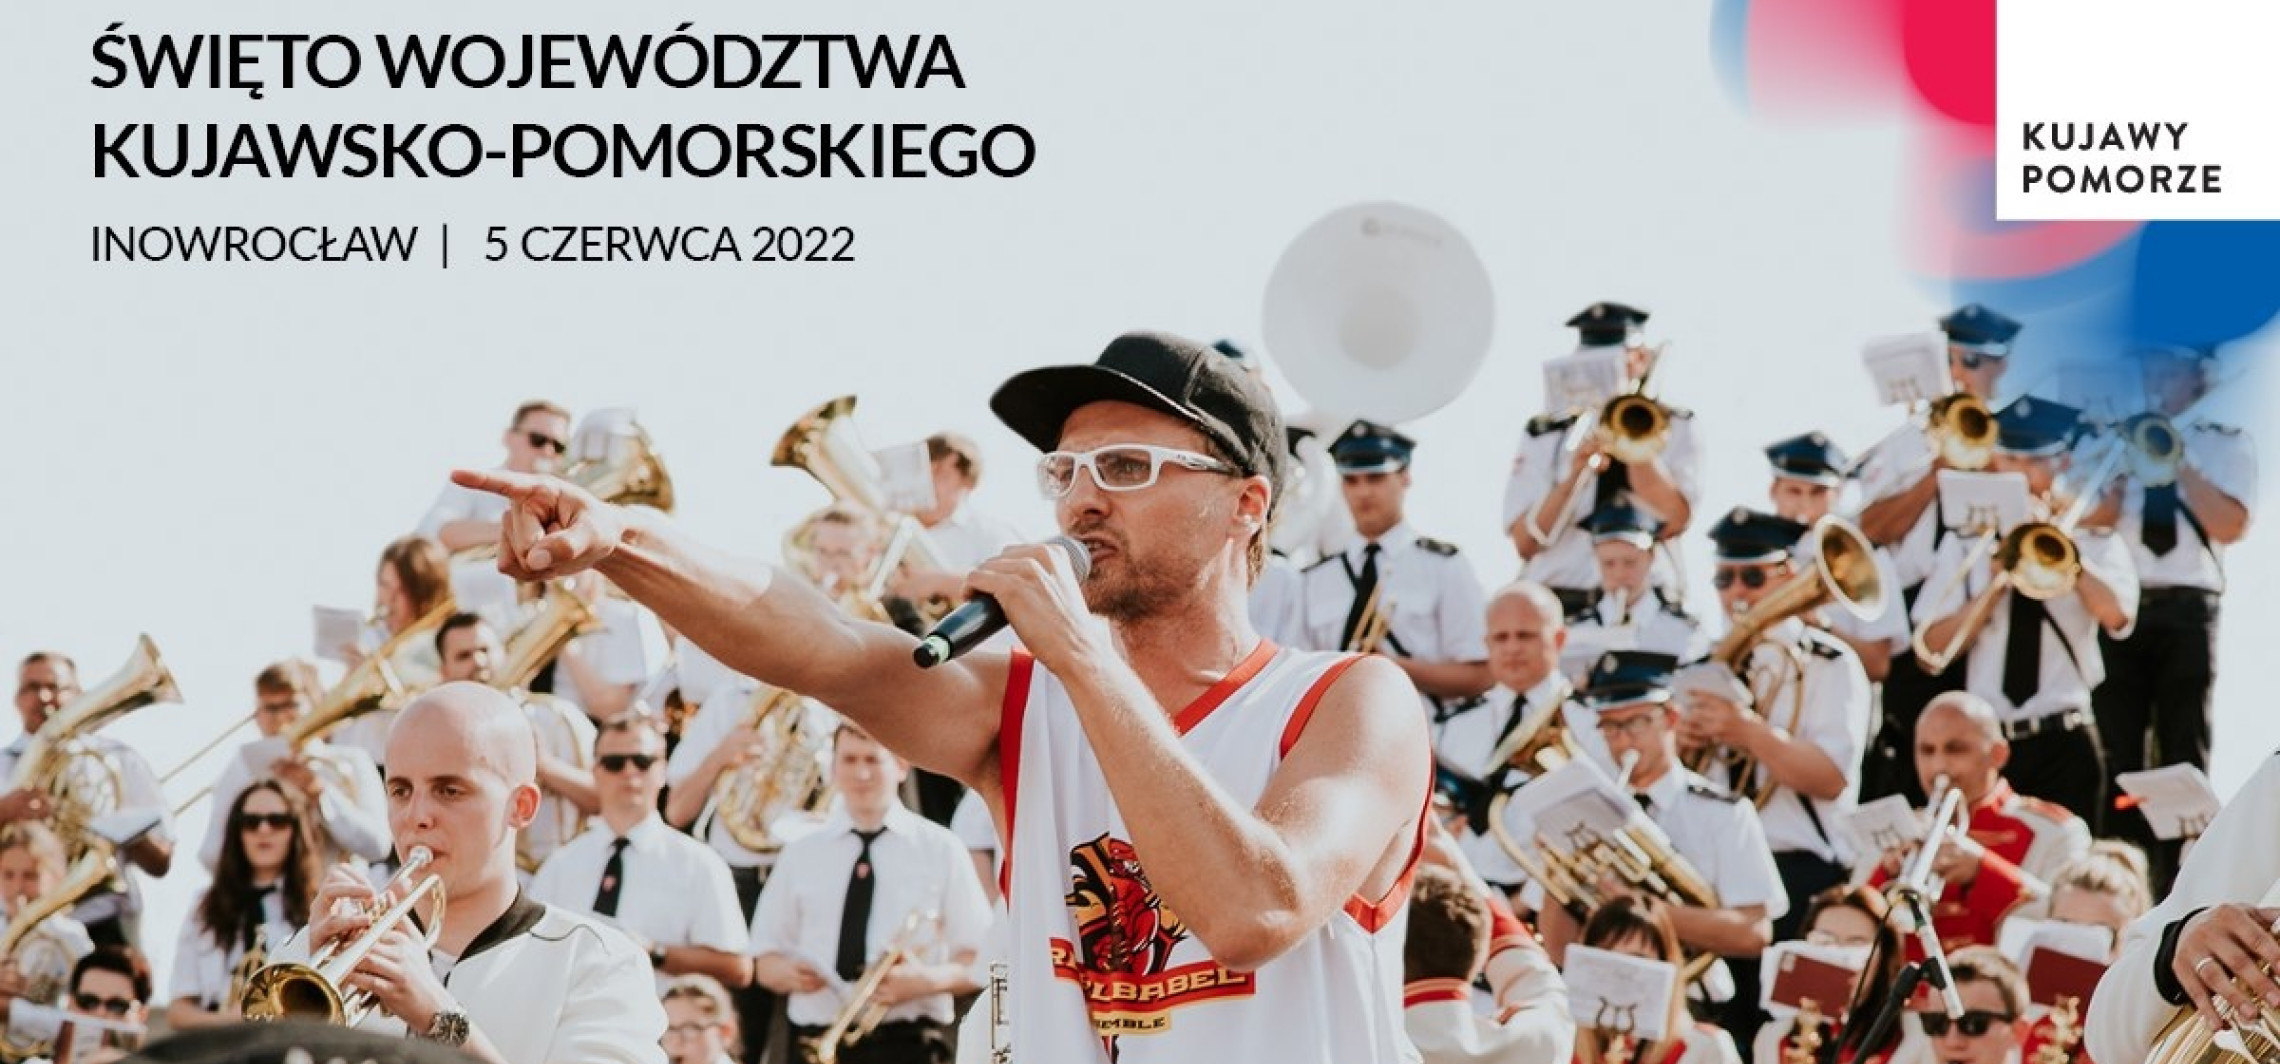 Inowrocław - Dziś województwo świętuje w Inowrocławiu